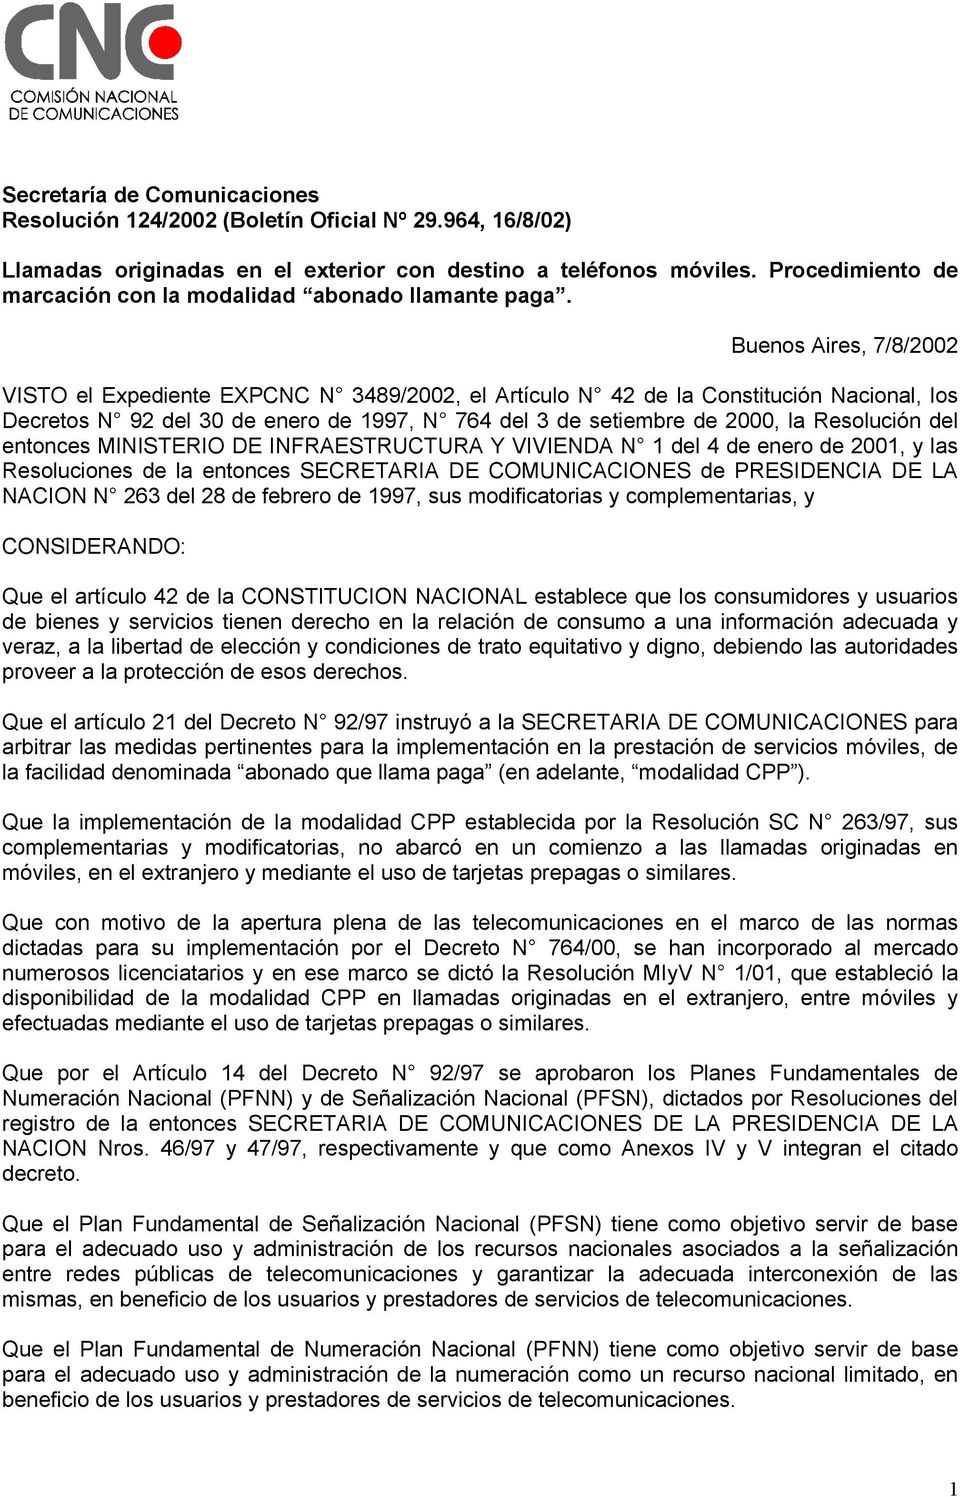 Buenos Aires, 7/8/2002 VISTO el Expediente EXPCNC N 3489/2002, el Artículo N 42 de la Constitución Nacional, los Decretos N 92 del 30 de enero de 1997, N 764 del 3 de setiembre de 2000, la Resolución